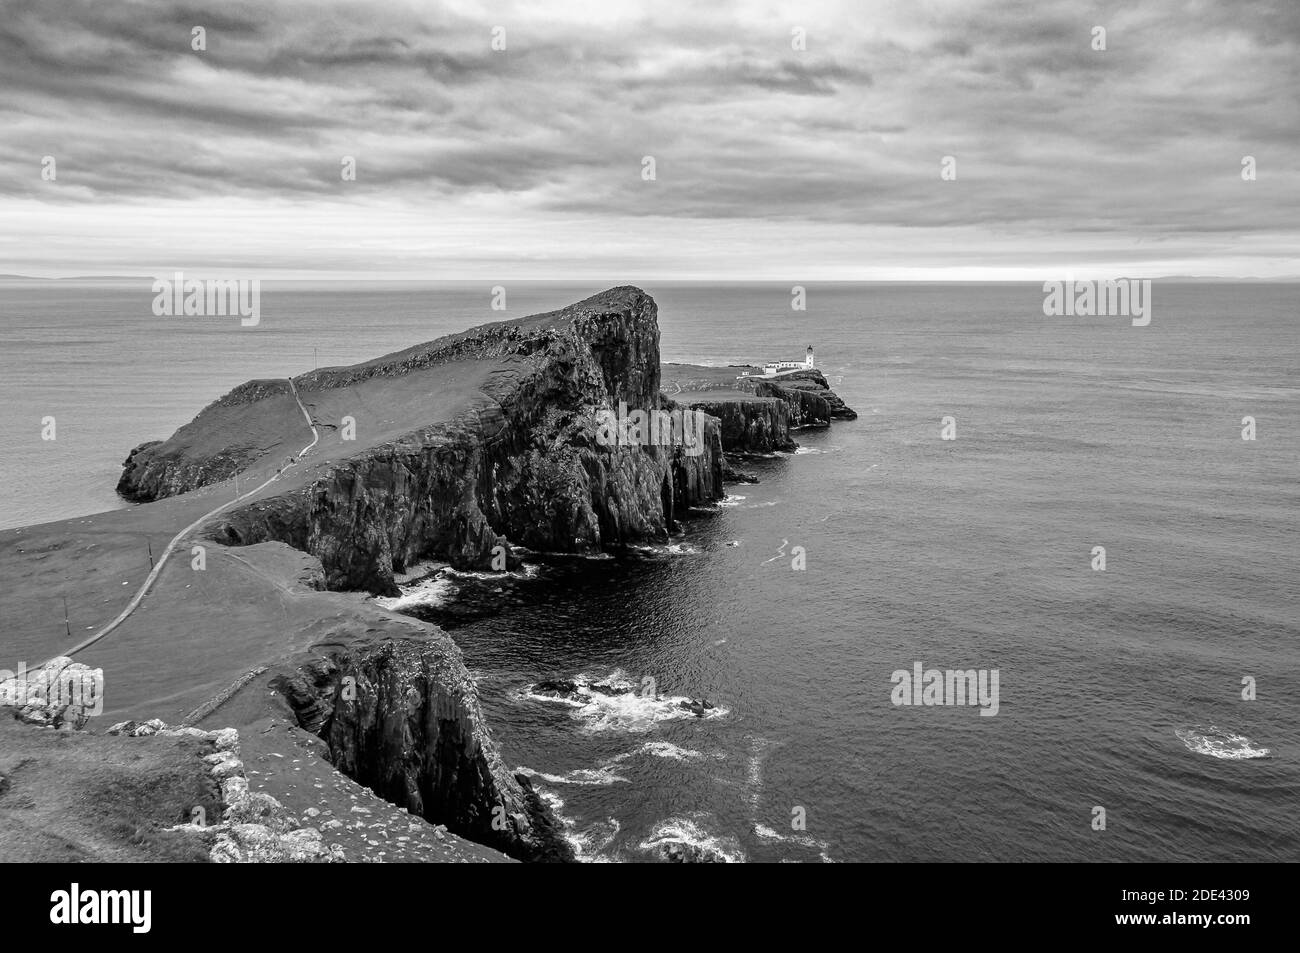 Phare de Neist point de Neist Cliff point de vue effet noir et blanc, île de Skye, Écosse. Concept: Paysage naturel célèbre, Scottish Landscap Banque D'Images